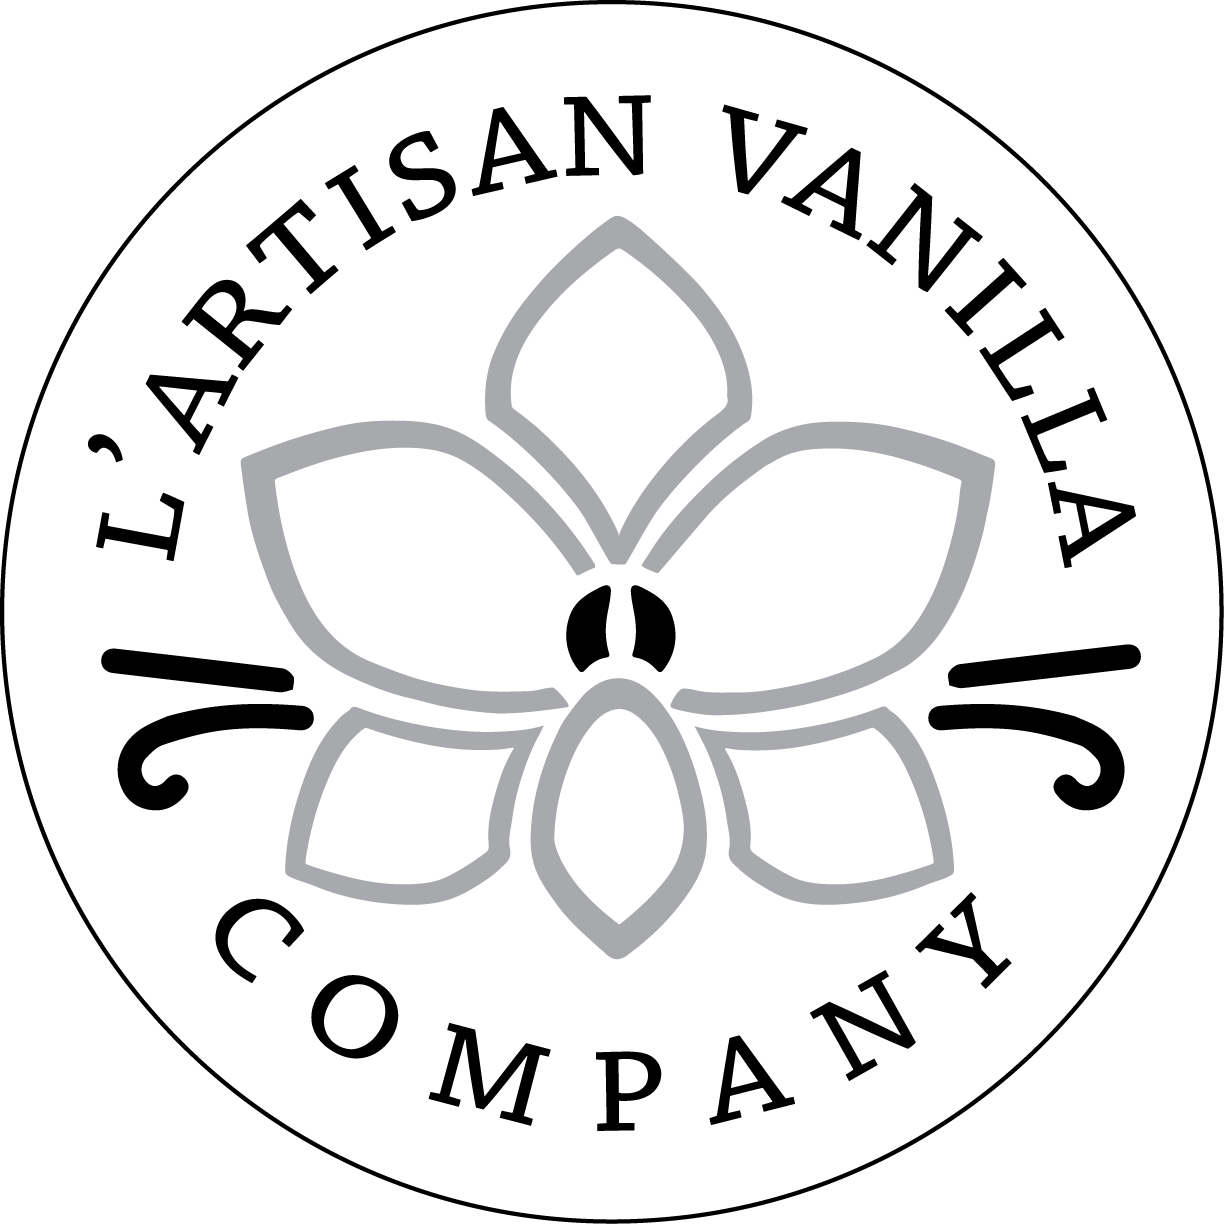 Artisan Vanilla Company